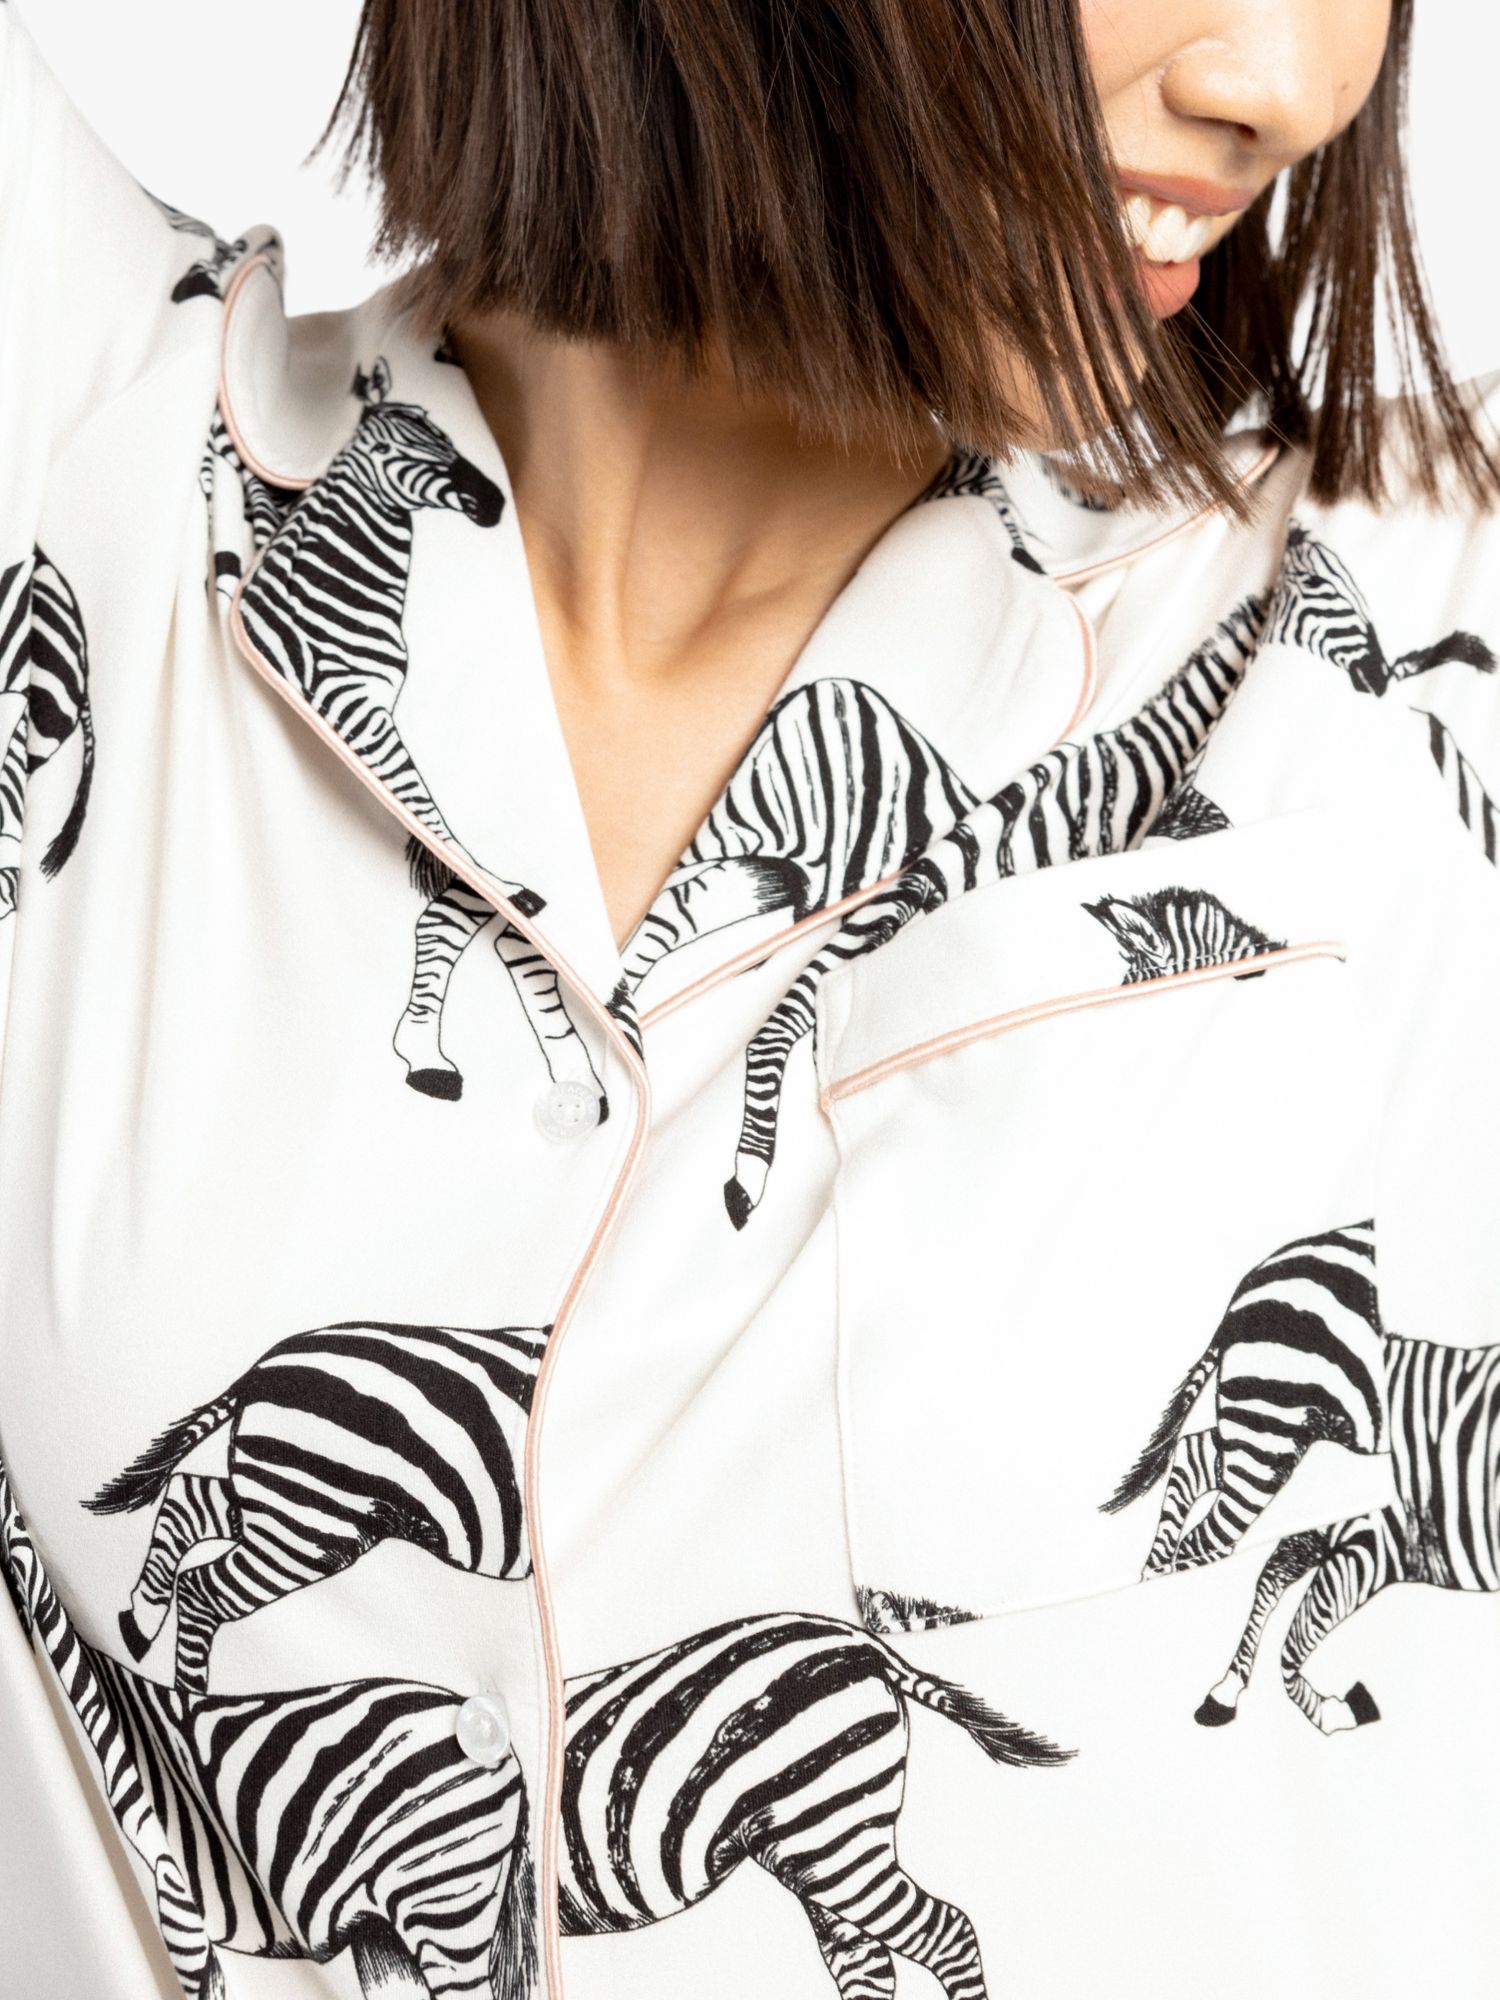 Buy Chelsea Peers Zebra Print Recycled Long Pyjamas Online at johnlewis.com